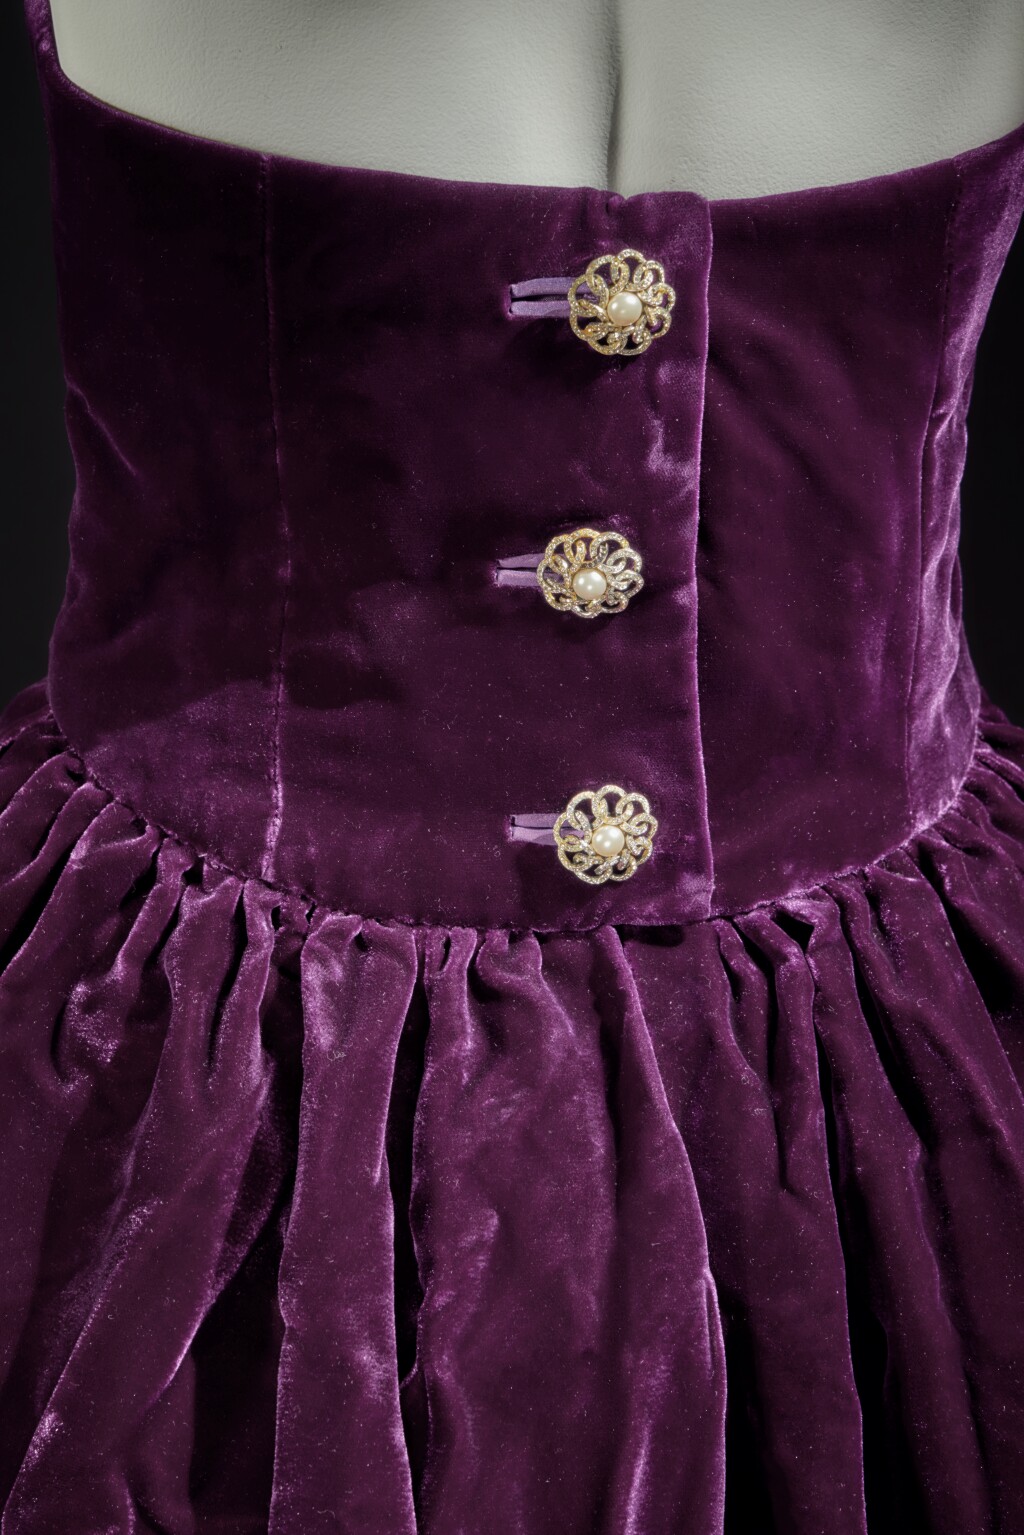 Платье принцессы Дианы выставили на аукцион во второй раз (фото 2)